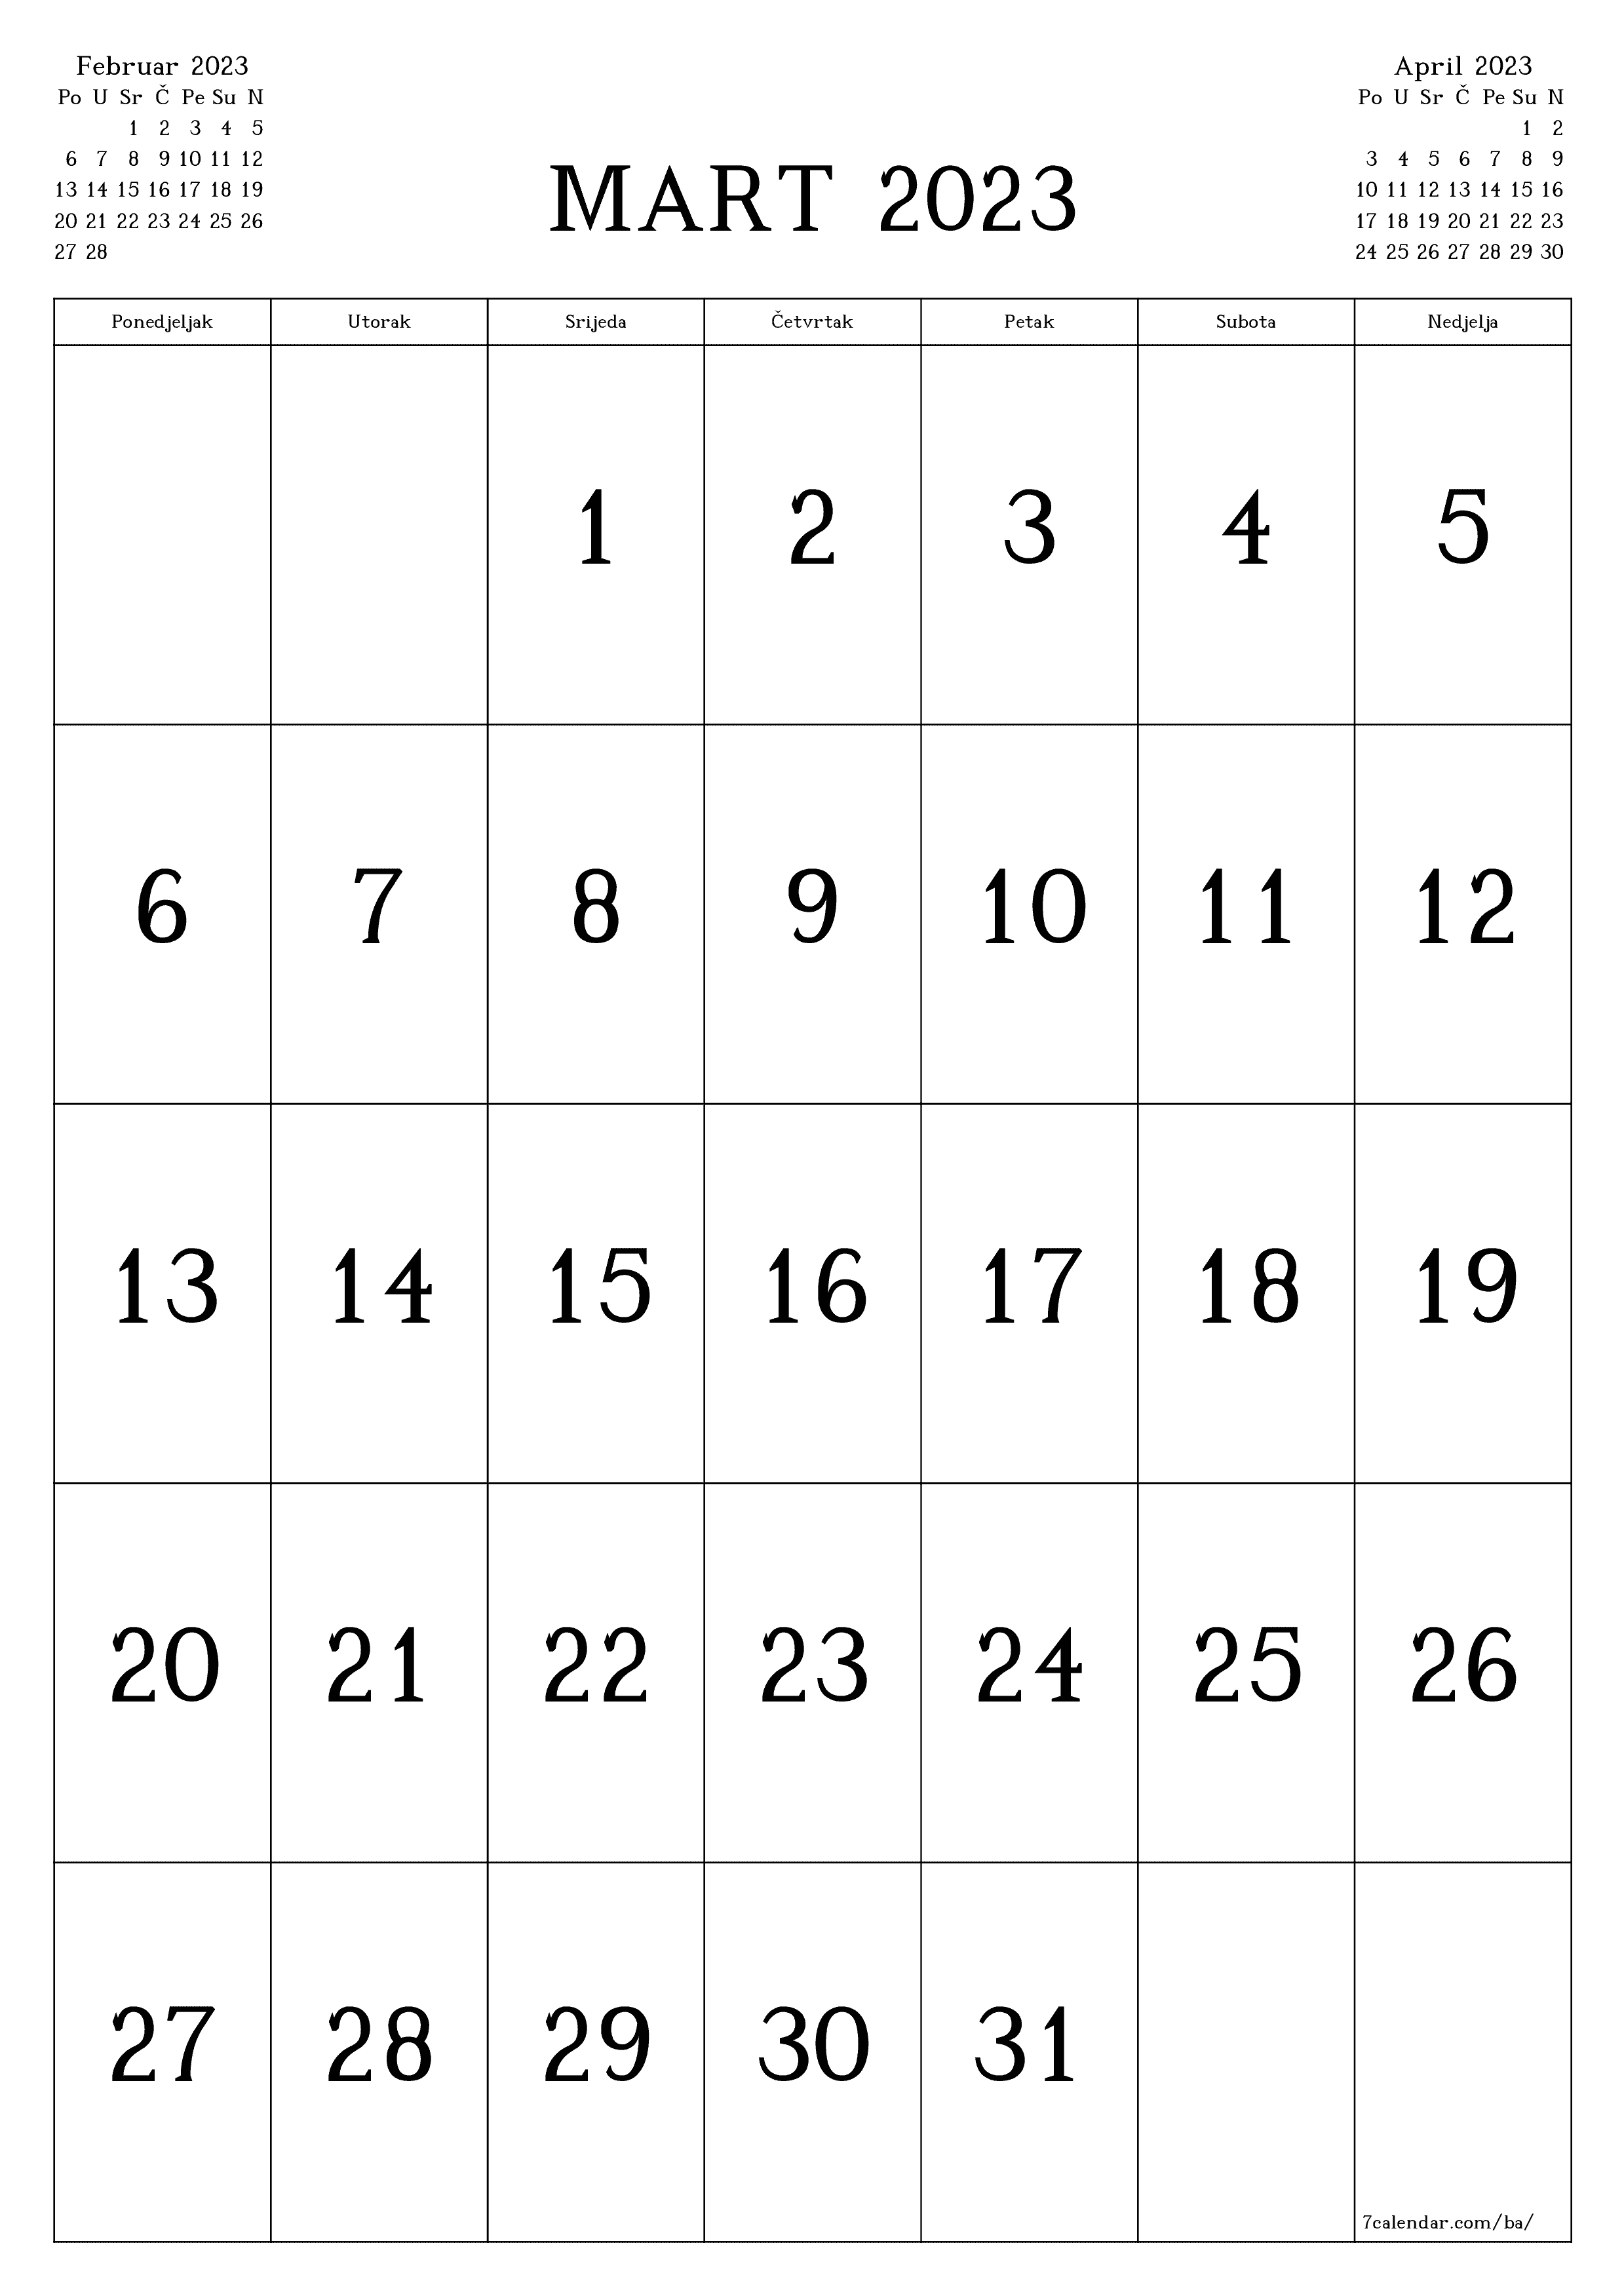 Prazan mjesečni kalendar za mjesec Mart 2023 spremite i ispišite u PDF PNG Bosnian - 7calendar.com